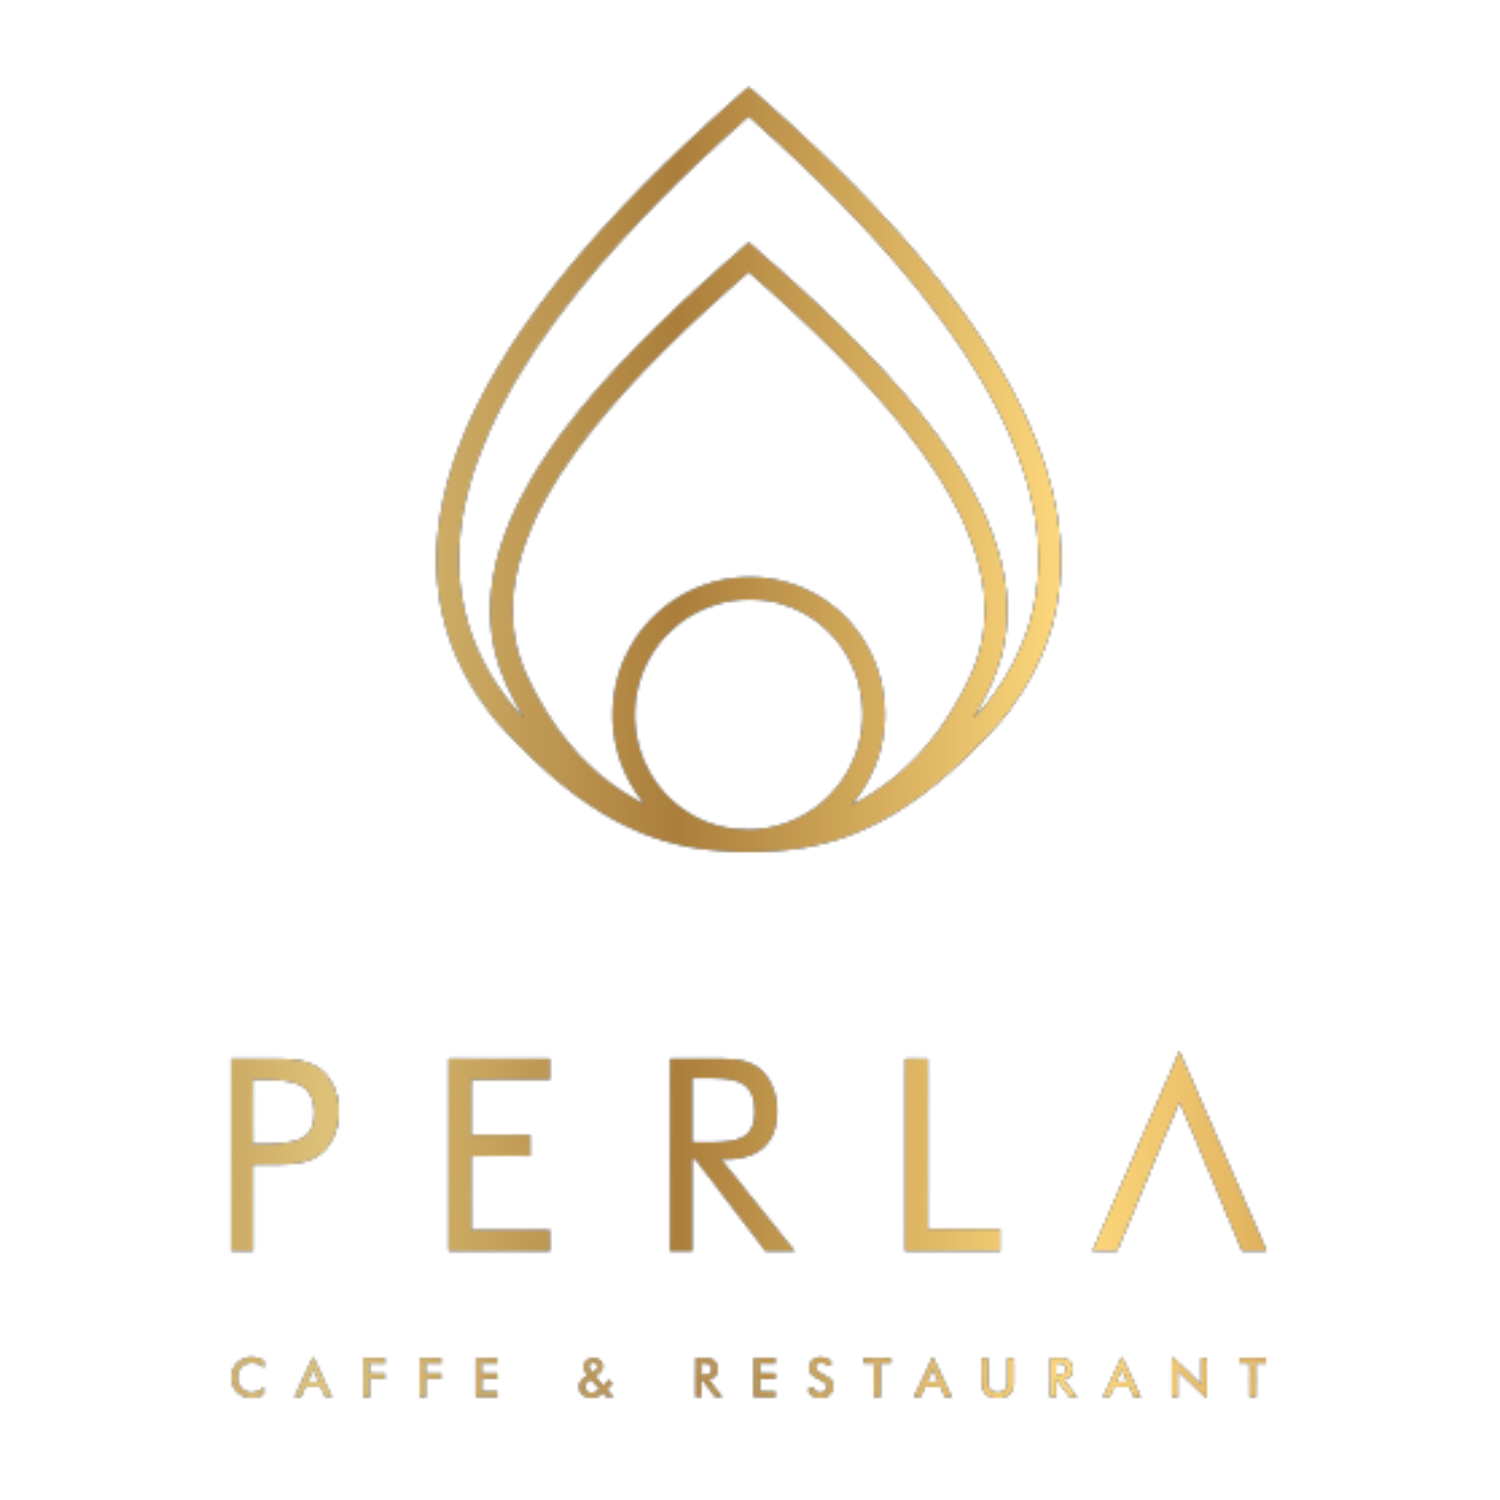 Caffe & Restaurant Perla logo